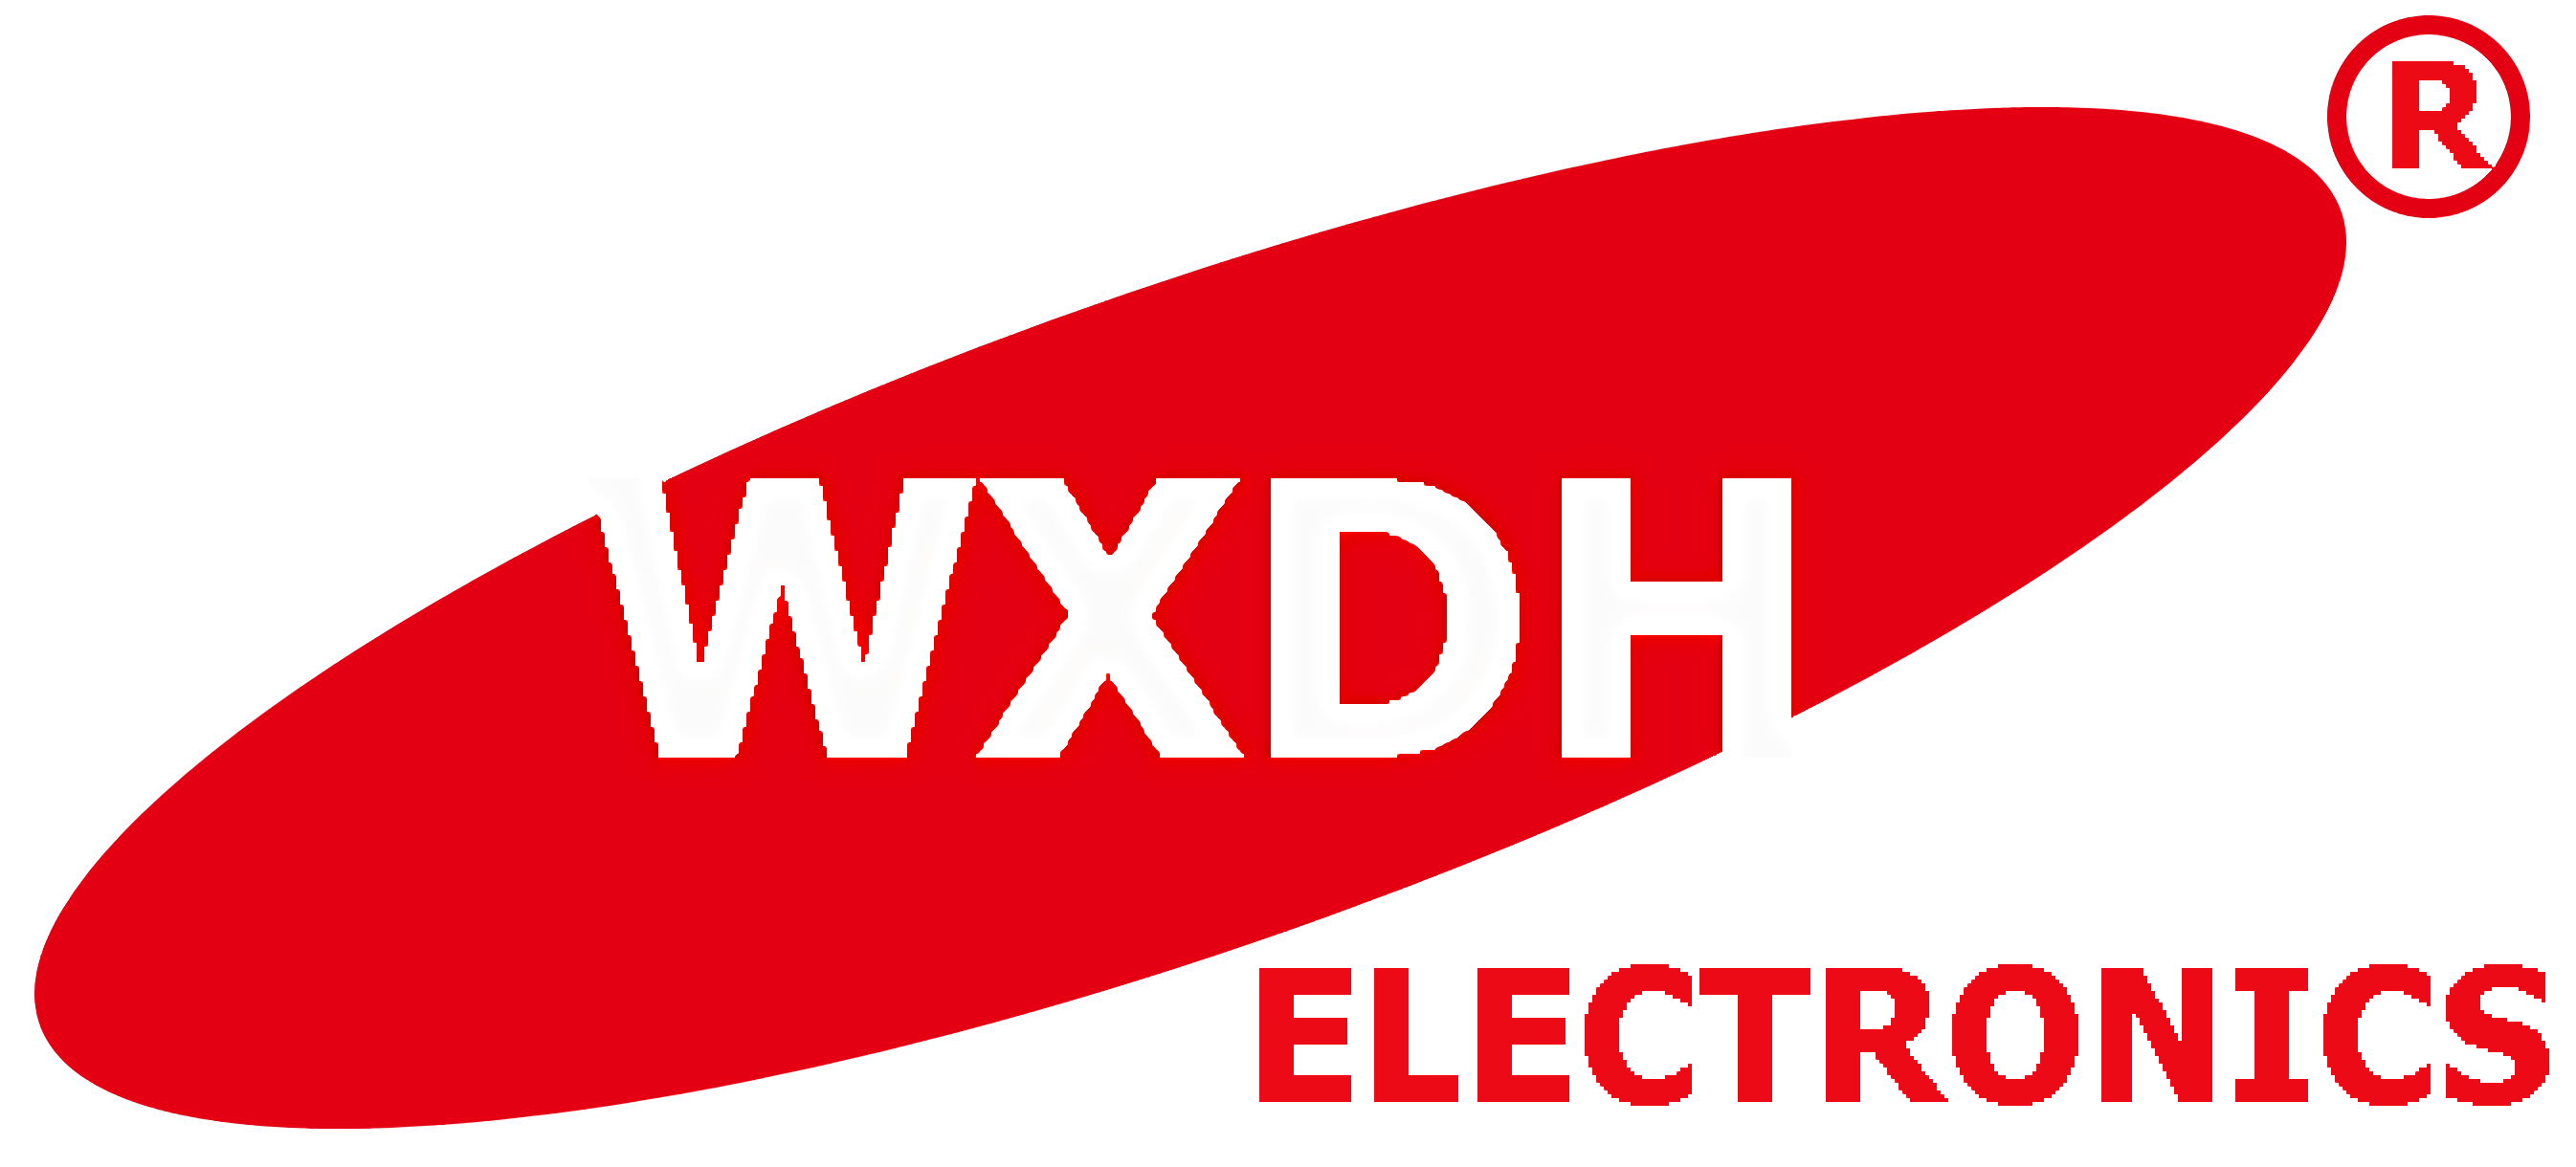 logotyp wxdh